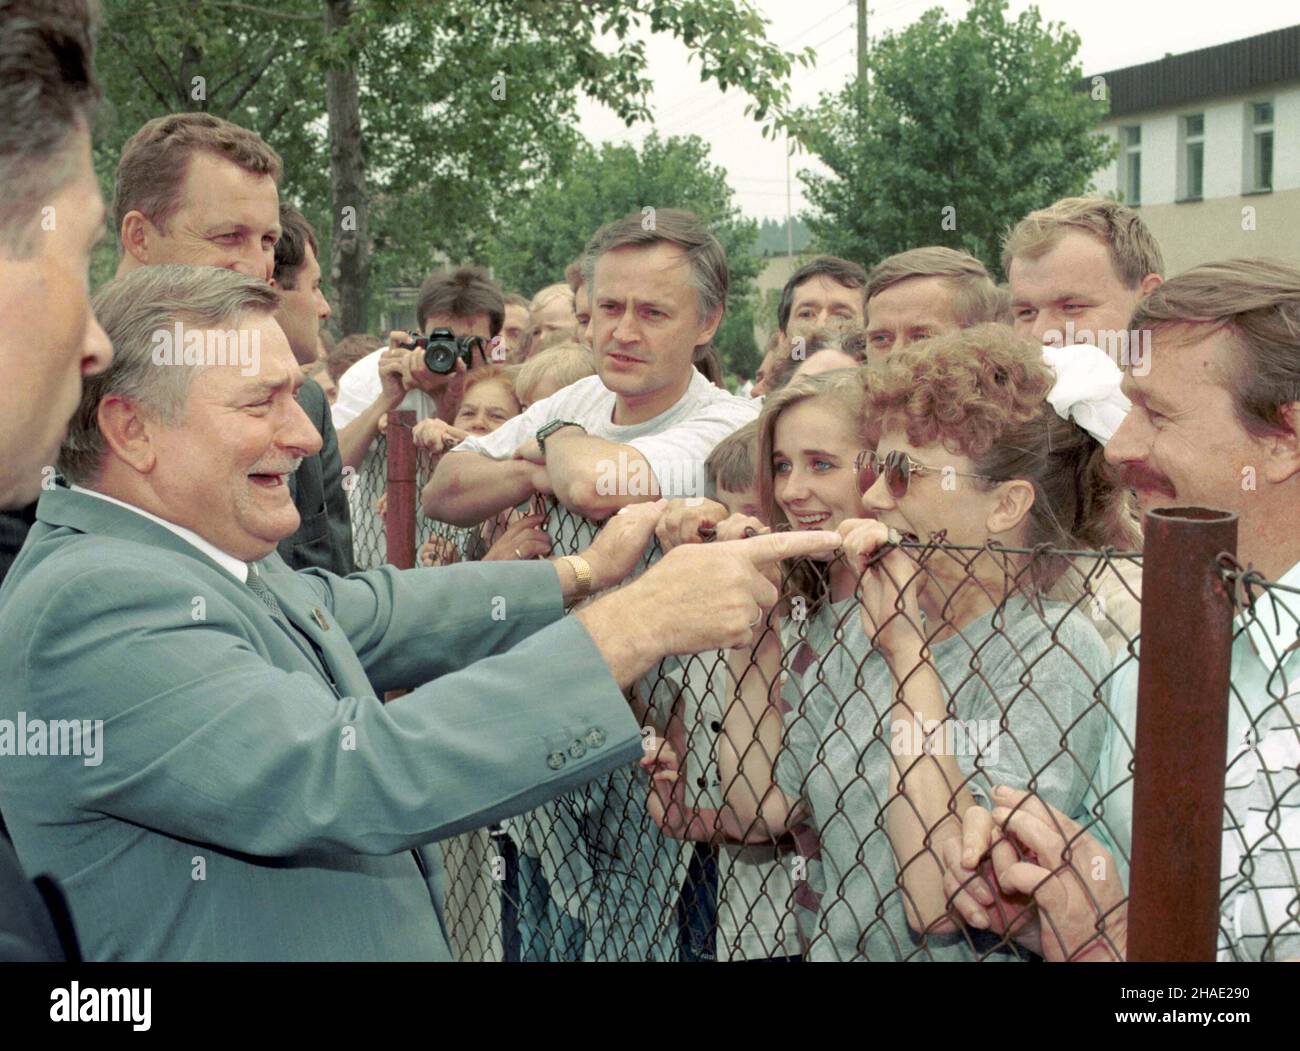 Kartuzy, 15.07.1995. Kampania prezydencka 1995 roku. N/z: ubiegaj¹cy siê o reelekcjê prezydent Lech Wa³êsa (L) spotka³ siê z mieszkañcami Kartuz. (kru) PAP/Maciej B. Brzozowski     Kartuzy, 15.07.1995. Campaign prior to Polish Presidential Elections of 1995. Pictured: president Lech Walesa (L) during a election meeting with people in Kartuzy, of northwestern Poland. (kru) PAP/Maciej B. Brzozowski Stock Photo